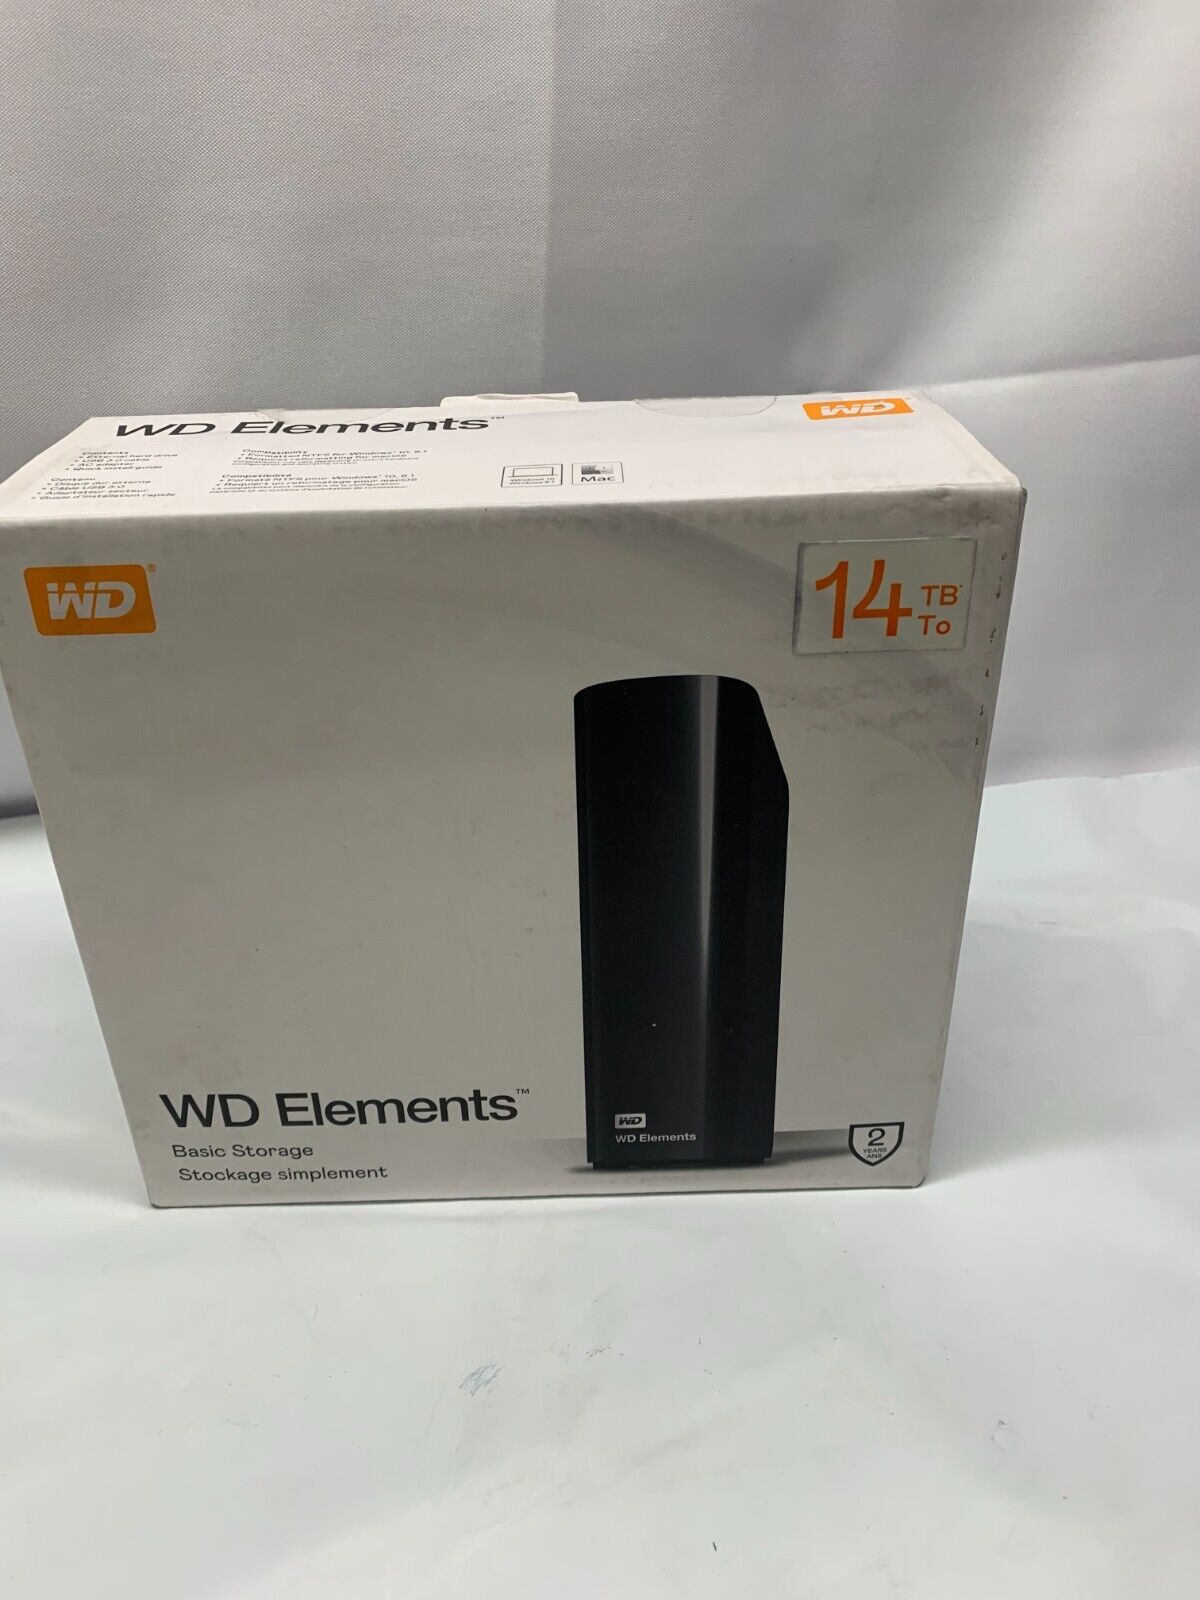 WD Elements 14TB Desktop External Hard Drive USB 3.0 Western Digital Mac/PC*New